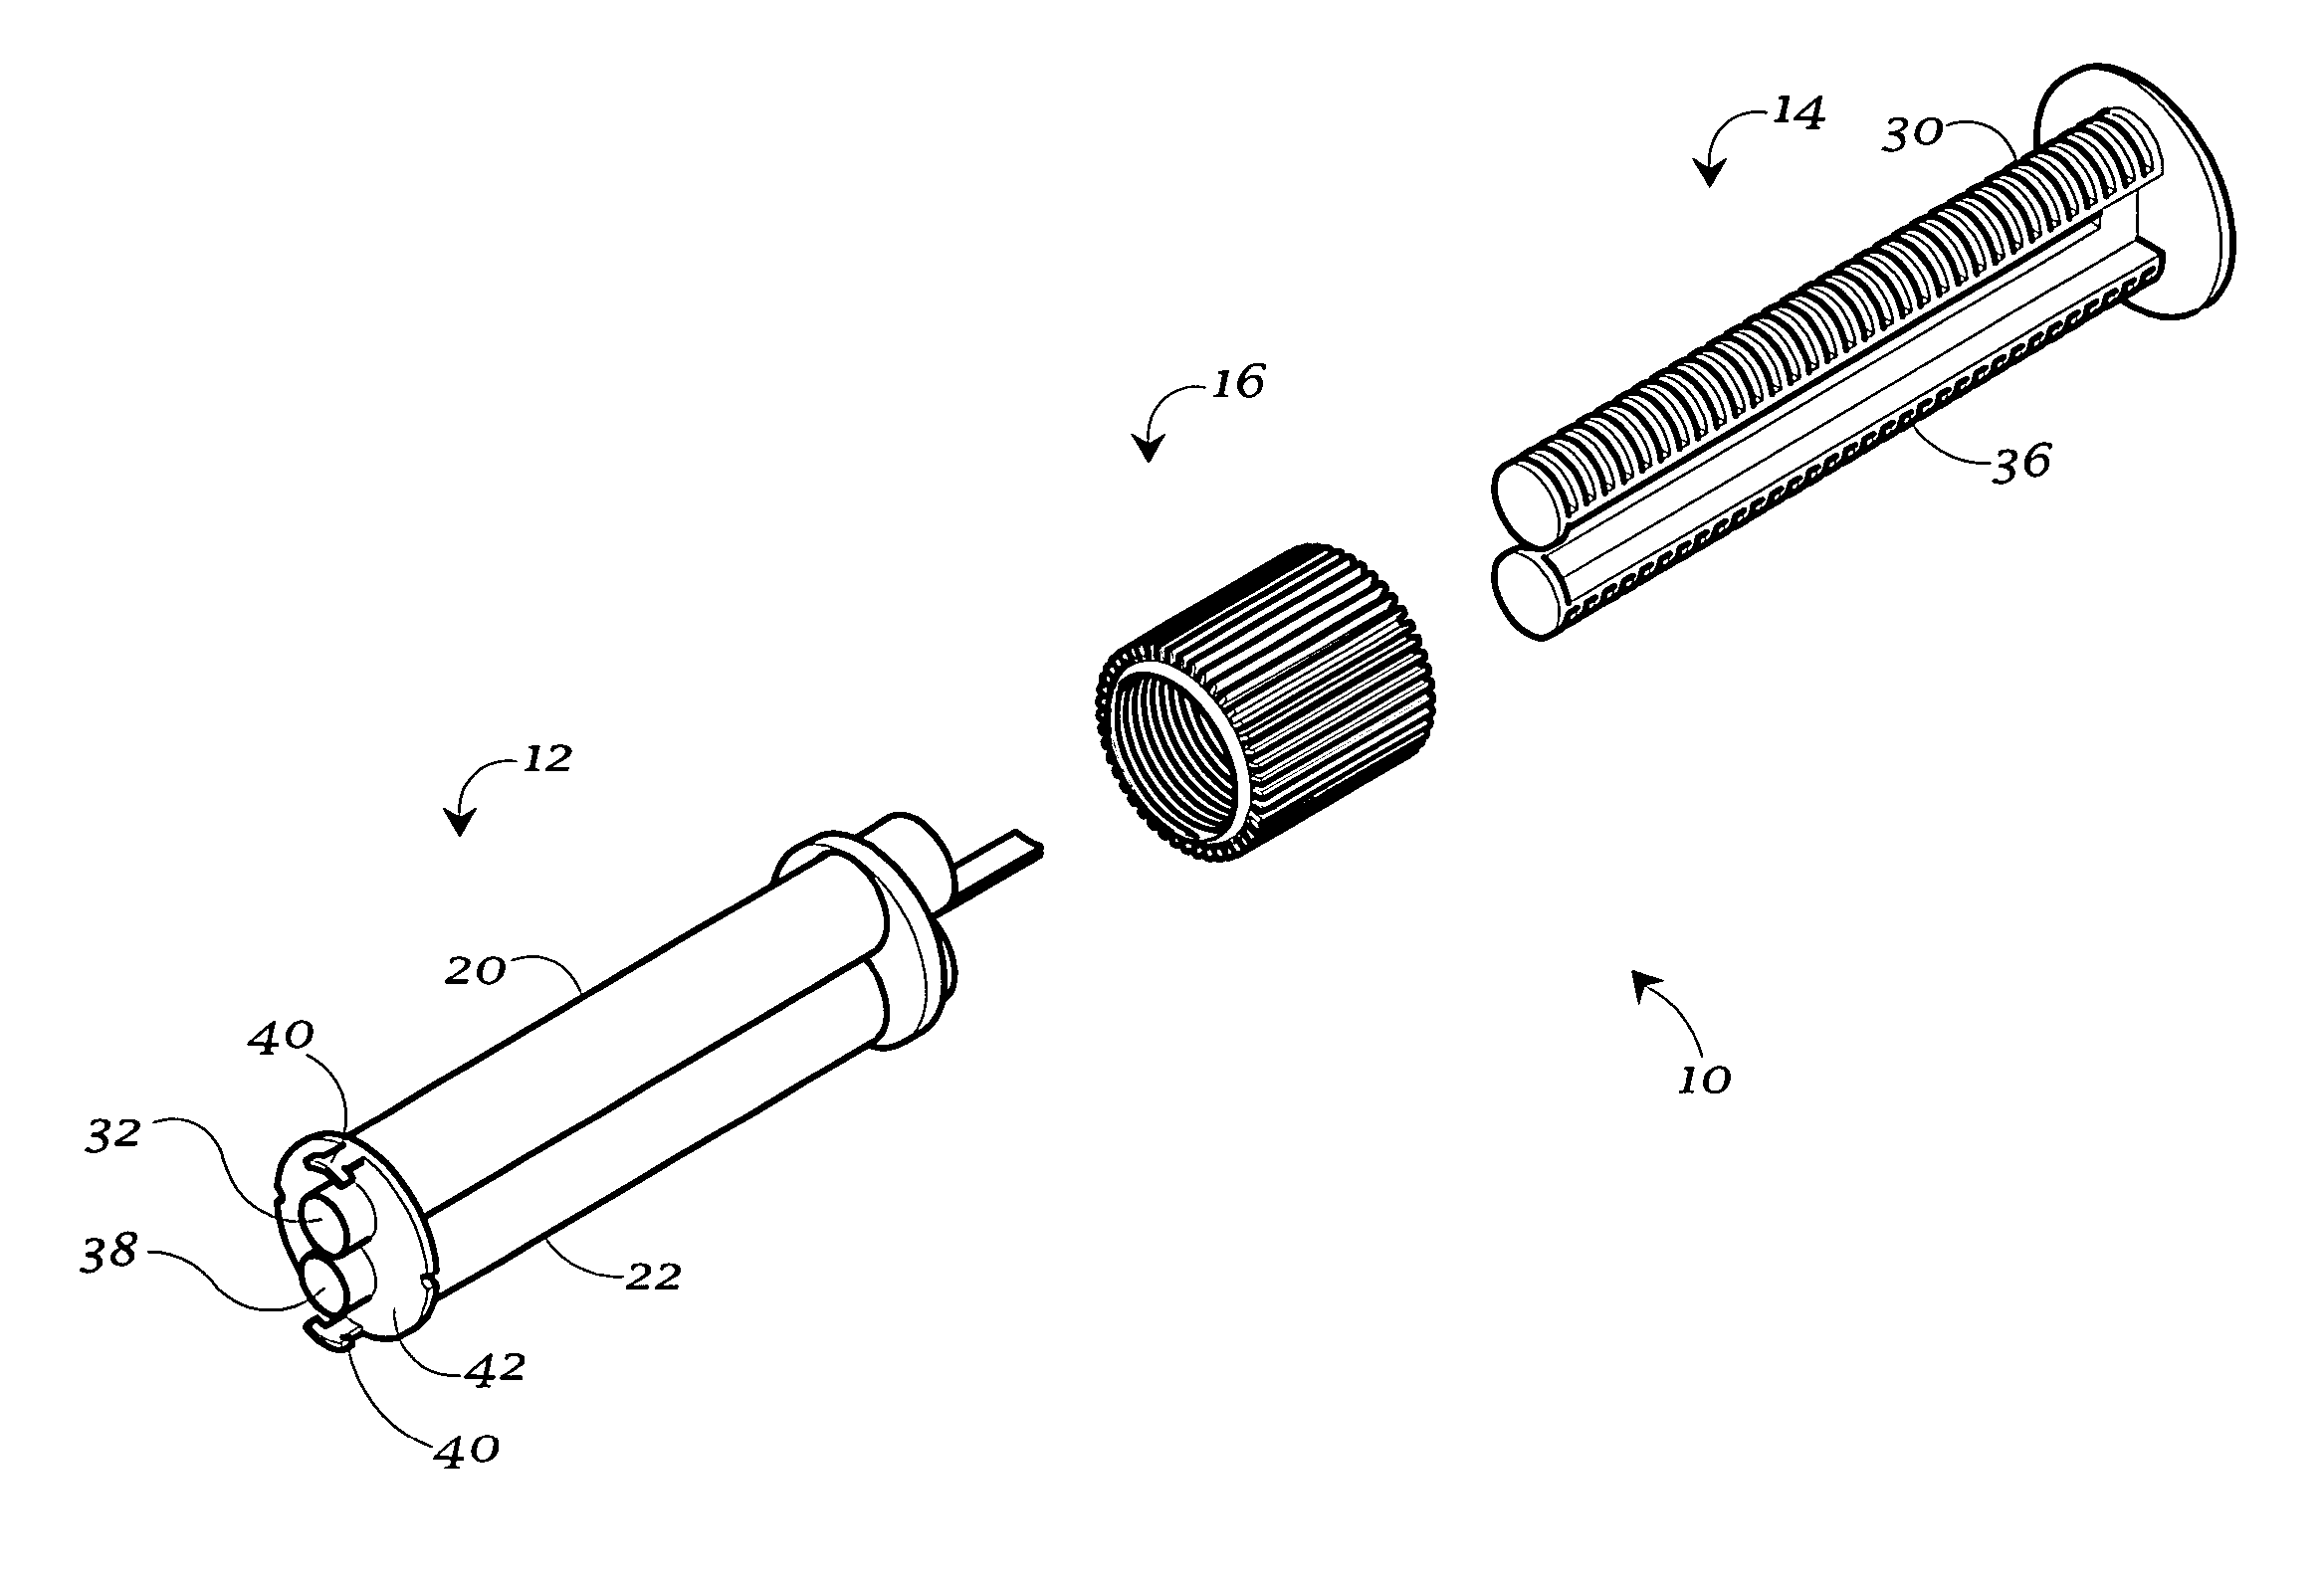 Dispensing syringe having multiple barrels for discharging a dental composition